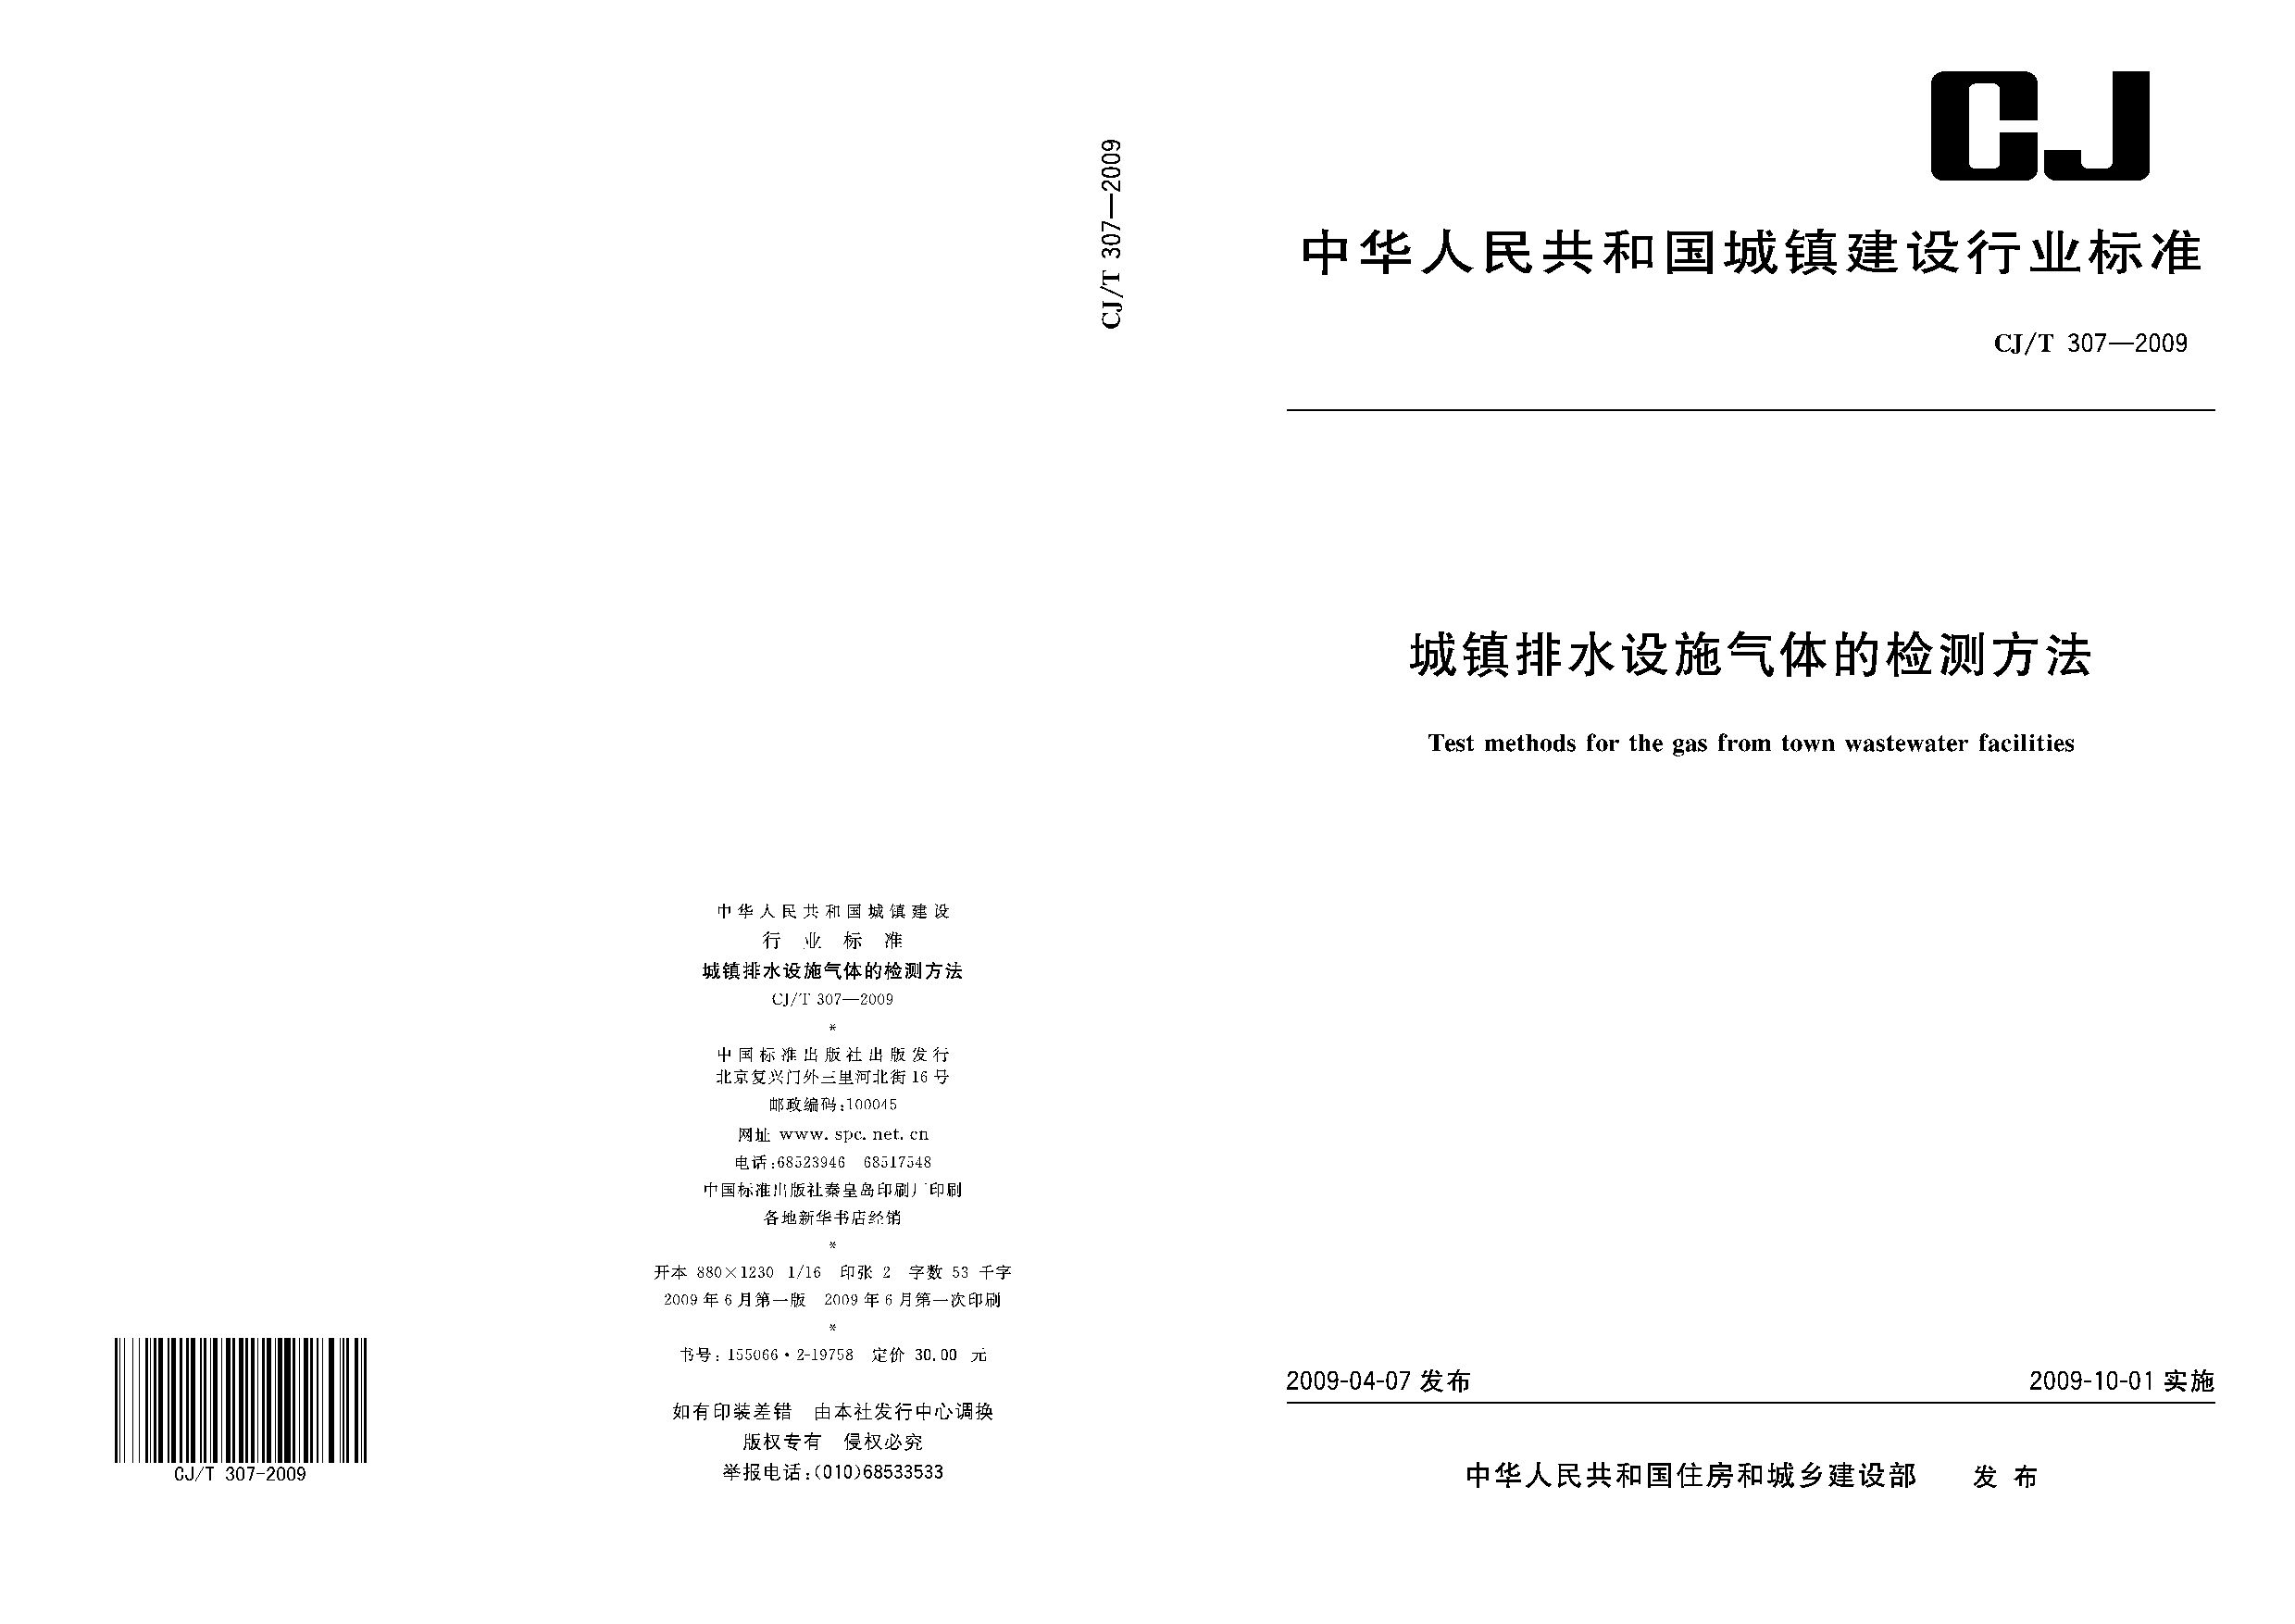 CJ/T 307-2009封面图